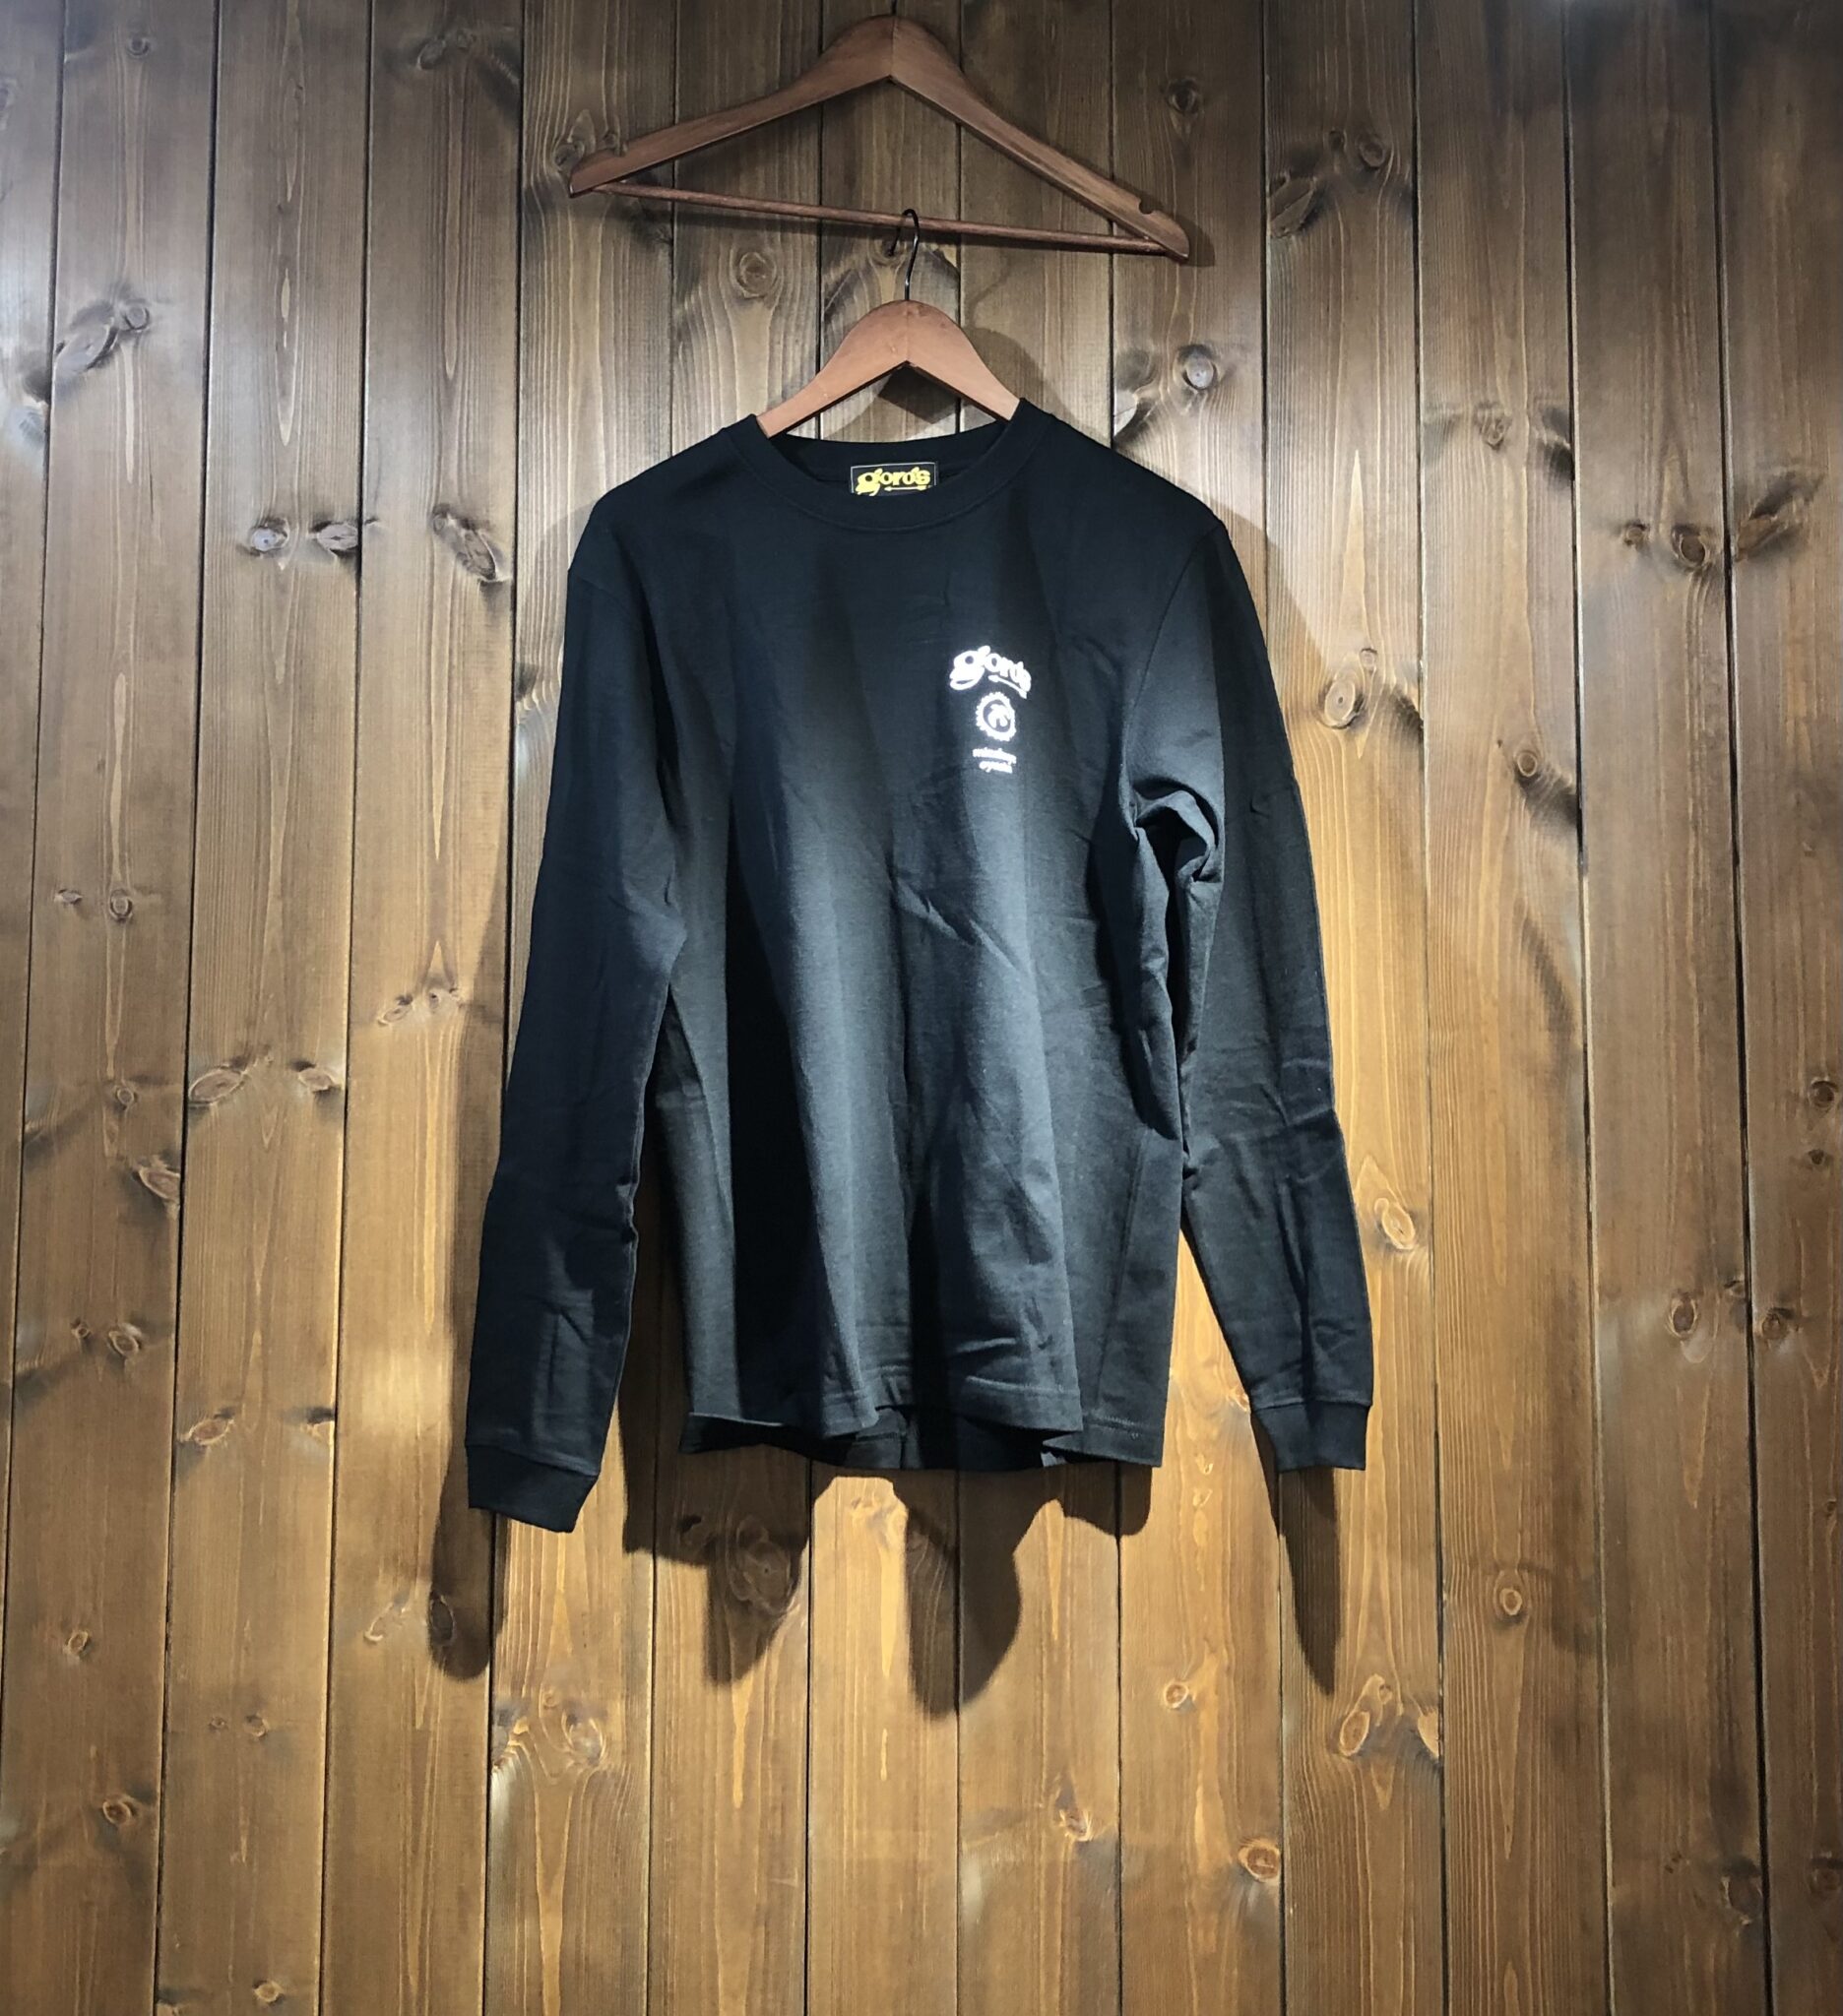 ゴローズロングTシャツ (黒) Tシャツ・ロンT - MONTE-CARLO 原宿 ...